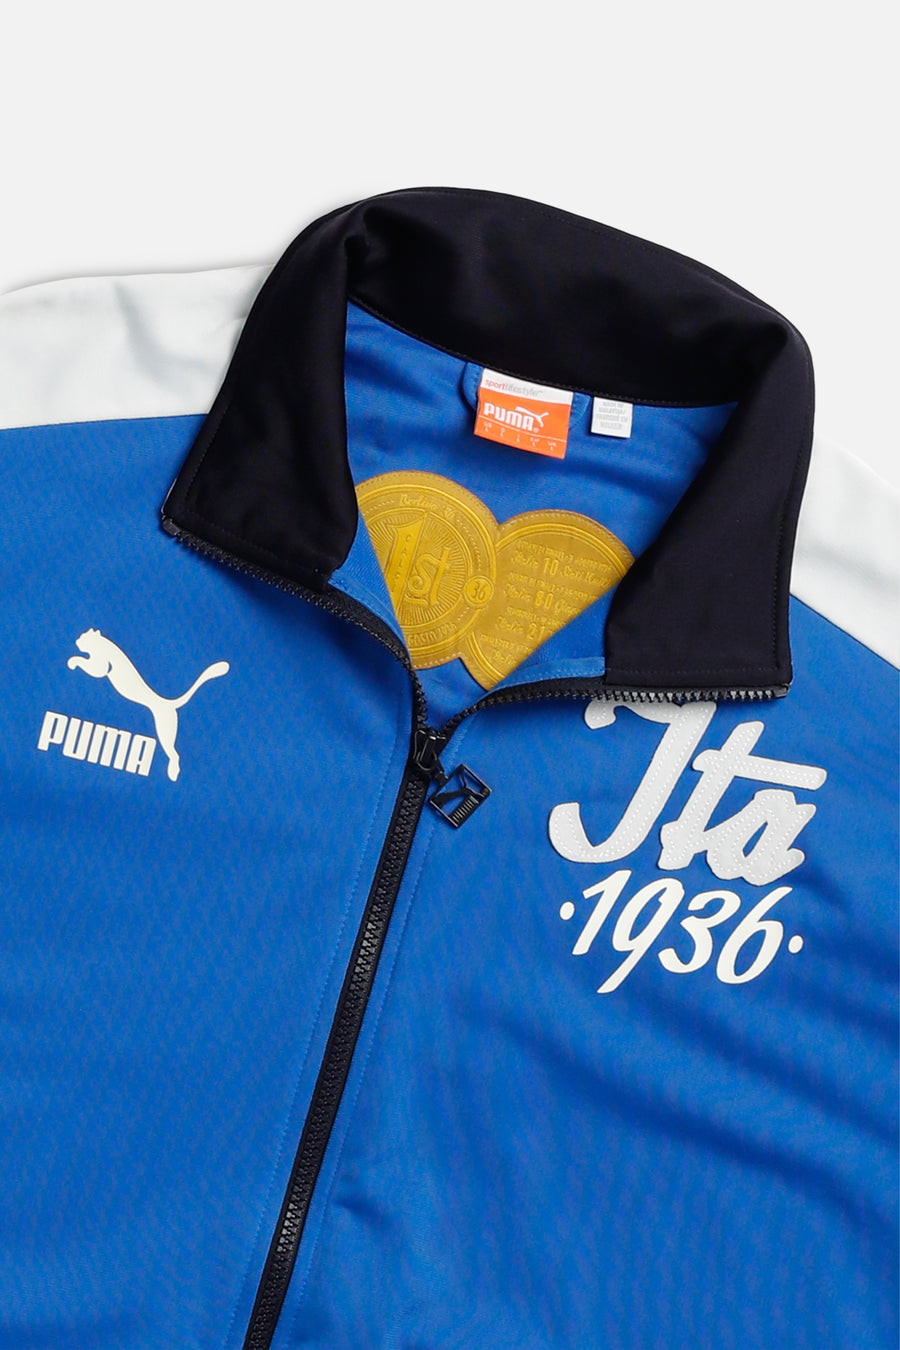 Vintage Italy Soccer Track Jacket - L